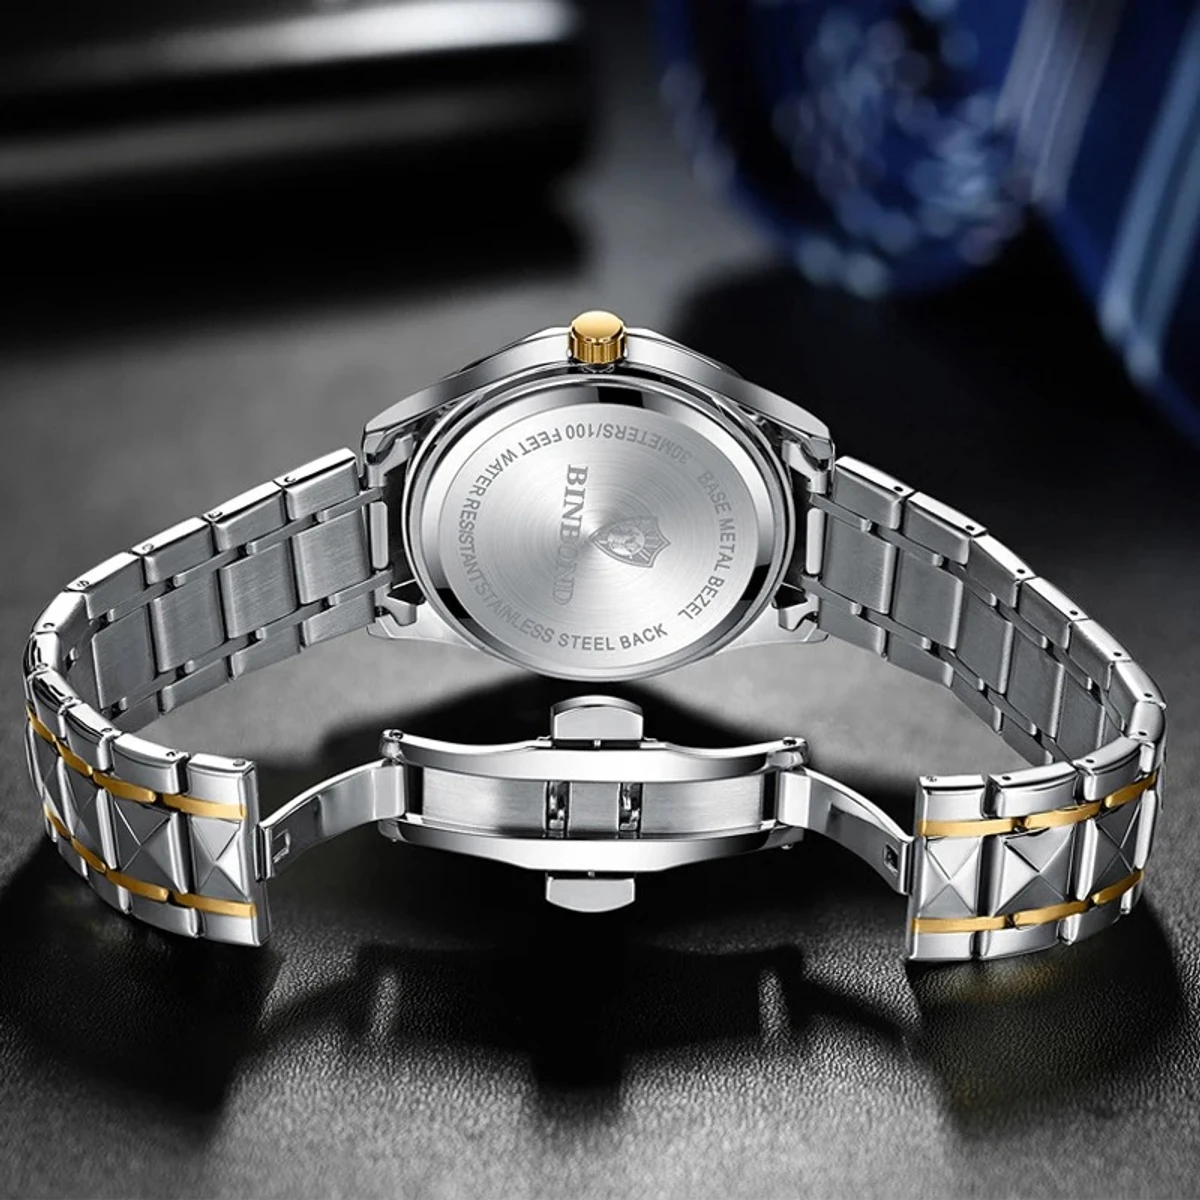 Binbond Luxury Men Watches Business Top Brand Man Wristwatch Waterproof Luminous Date Week Quartz Men's Watch High Quality + Box- Golden